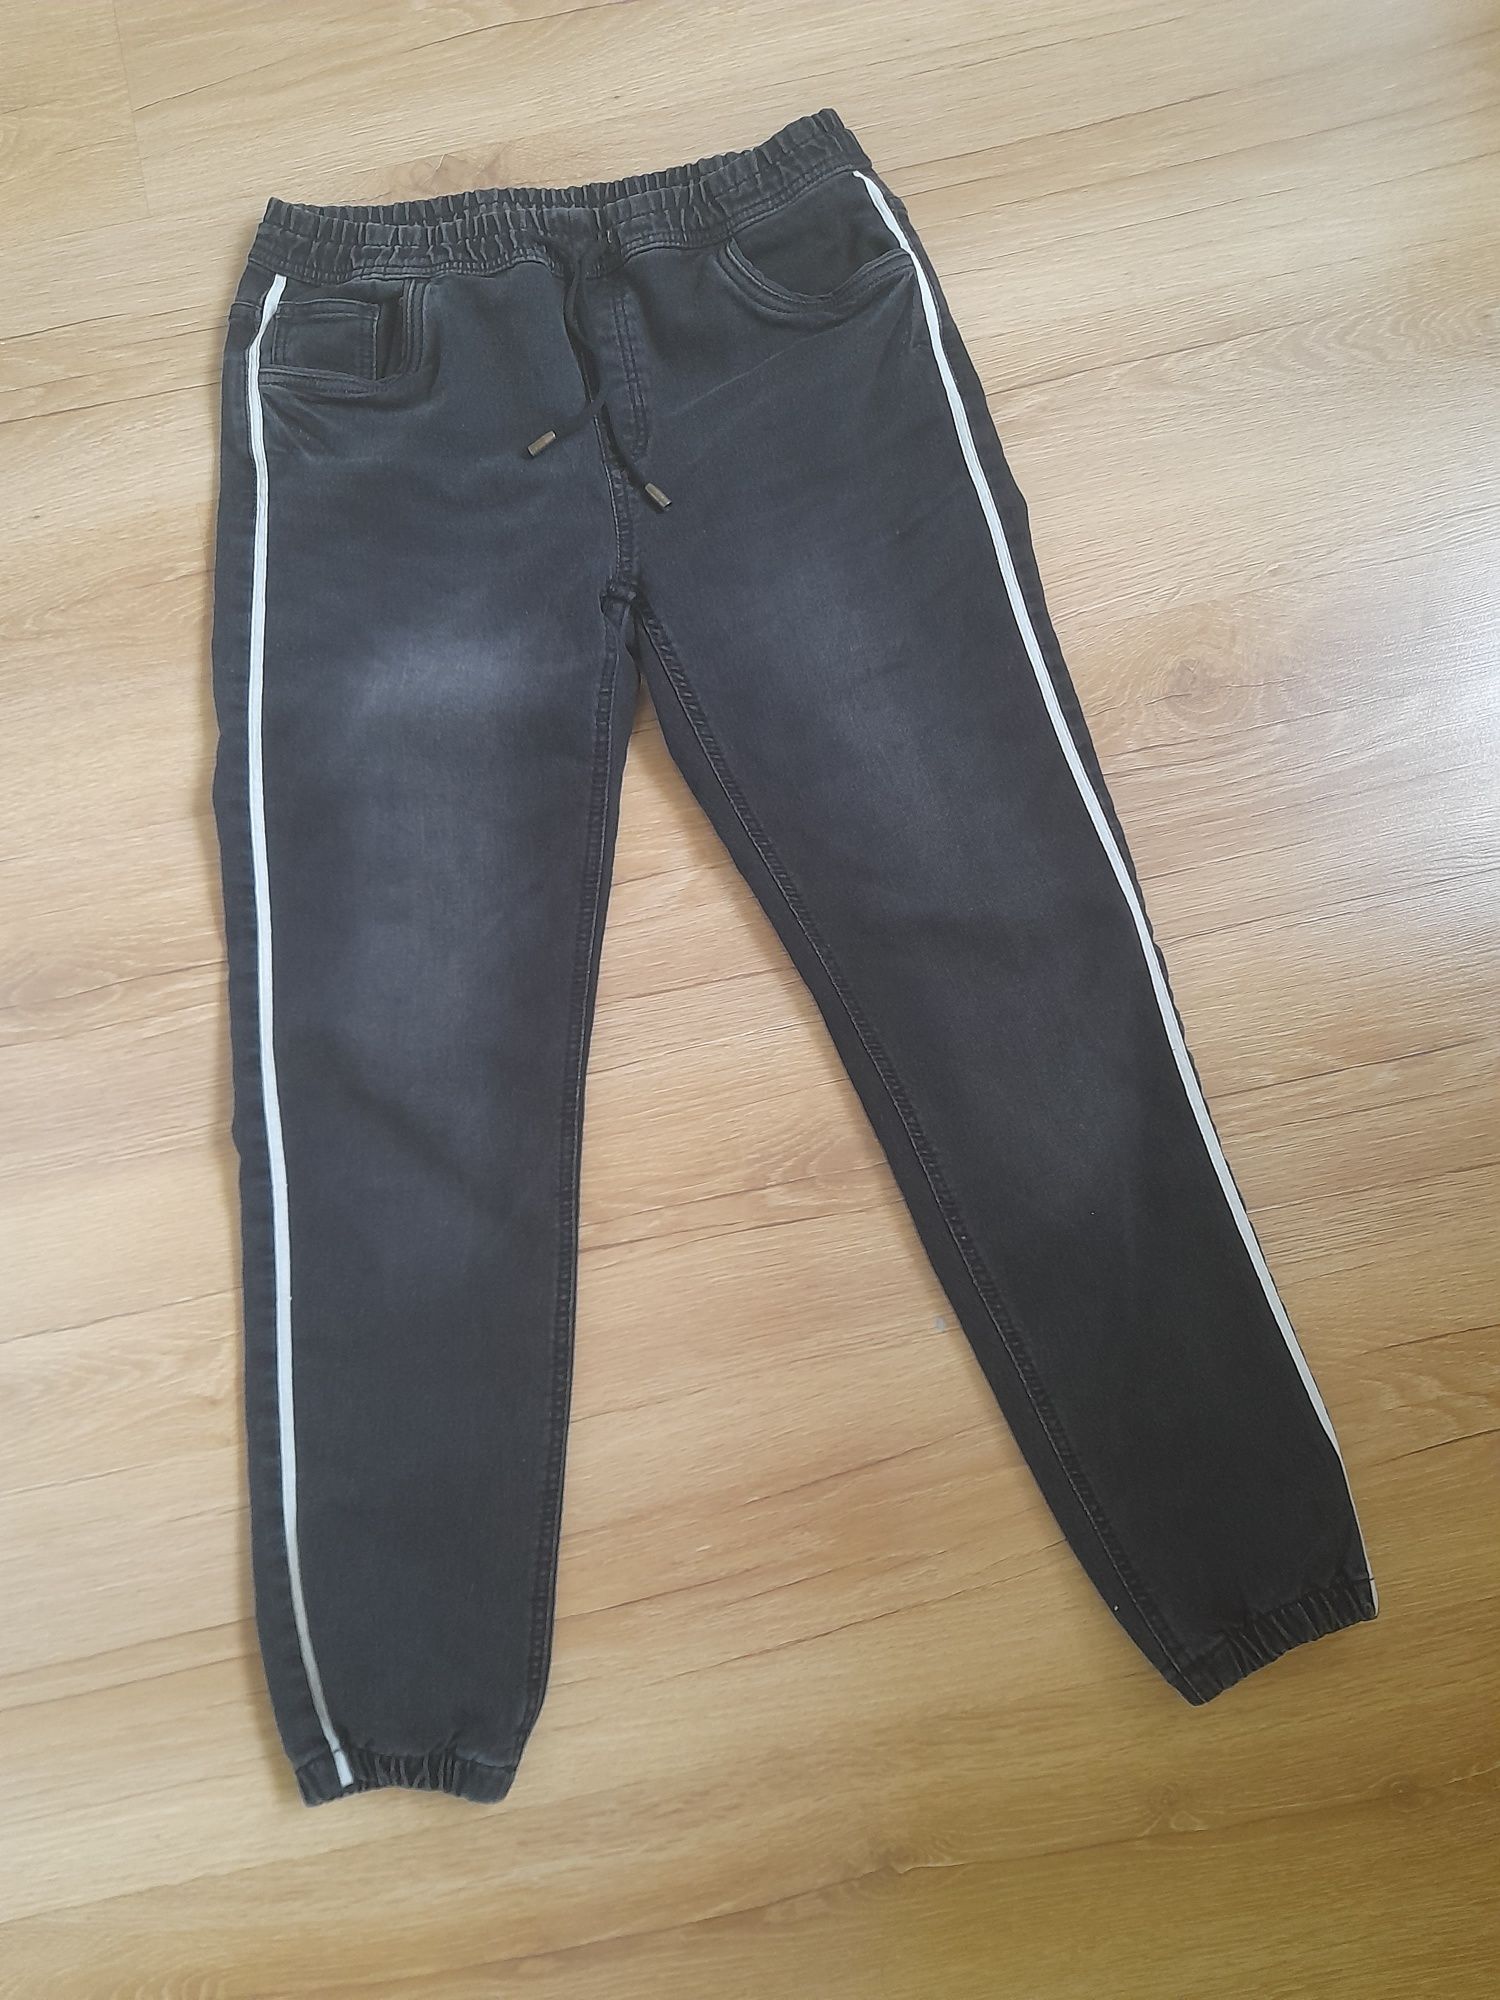 Spodnie jeansy joggery dla chłopca ok 164